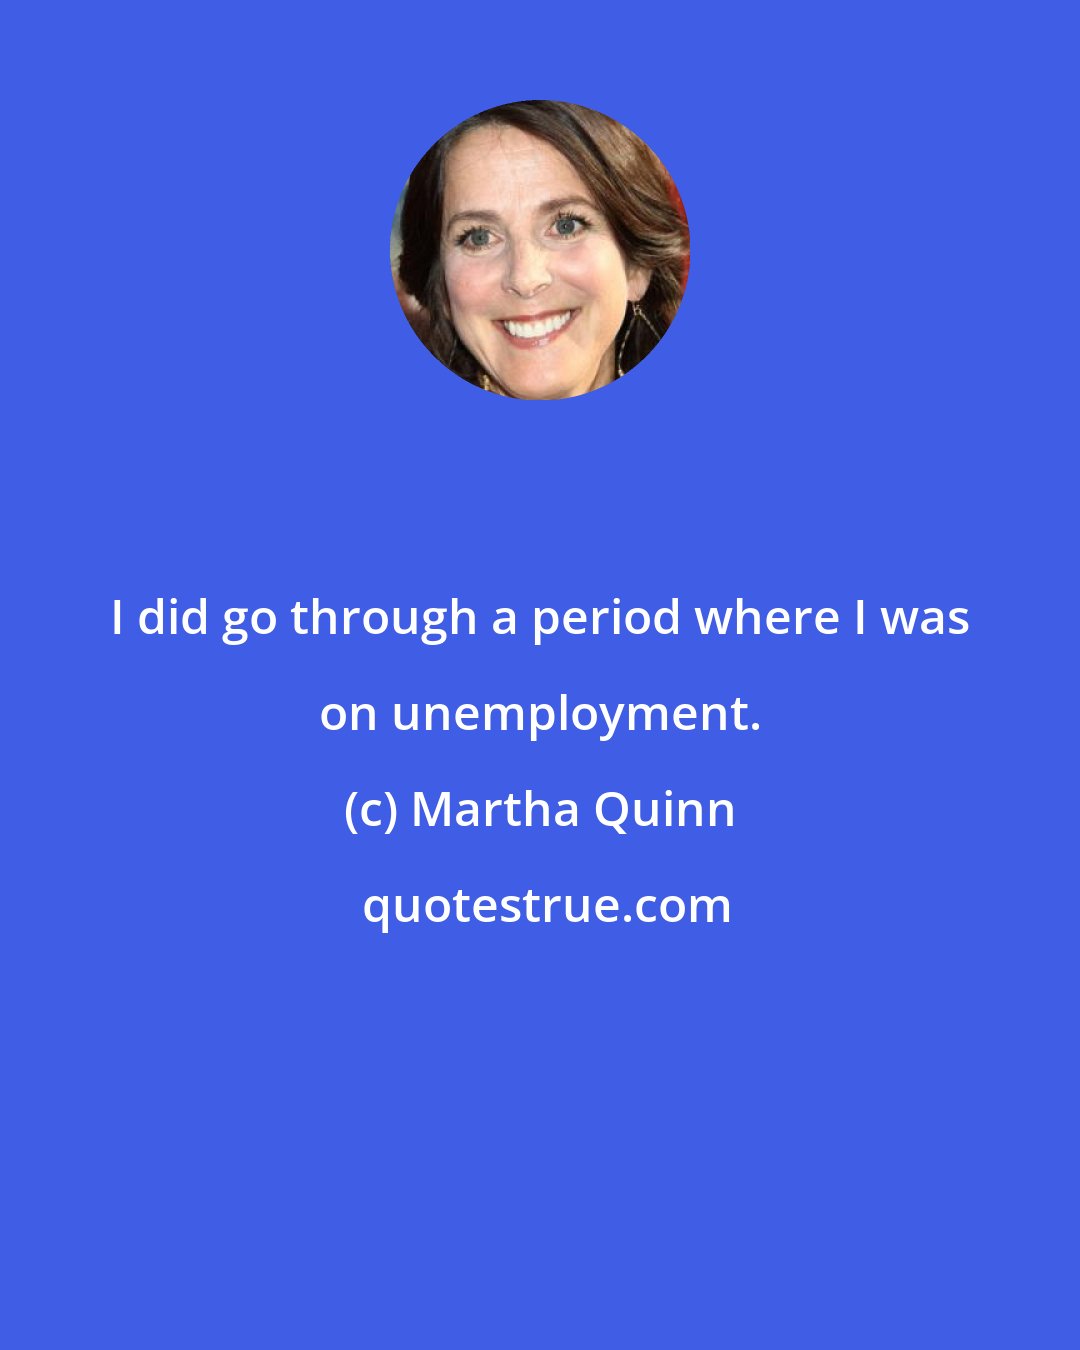 Martha Quinn: I did go through a period where I was on unemployment.